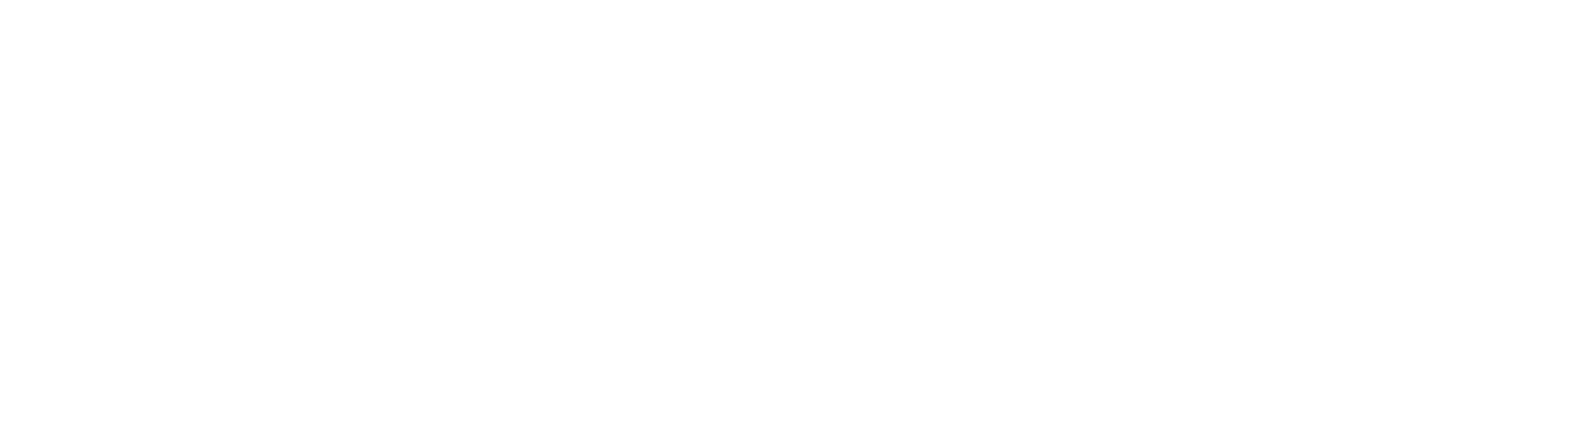 Iñaki Osa   Goiko     27 AÑOS PARA LA HISTORIA 